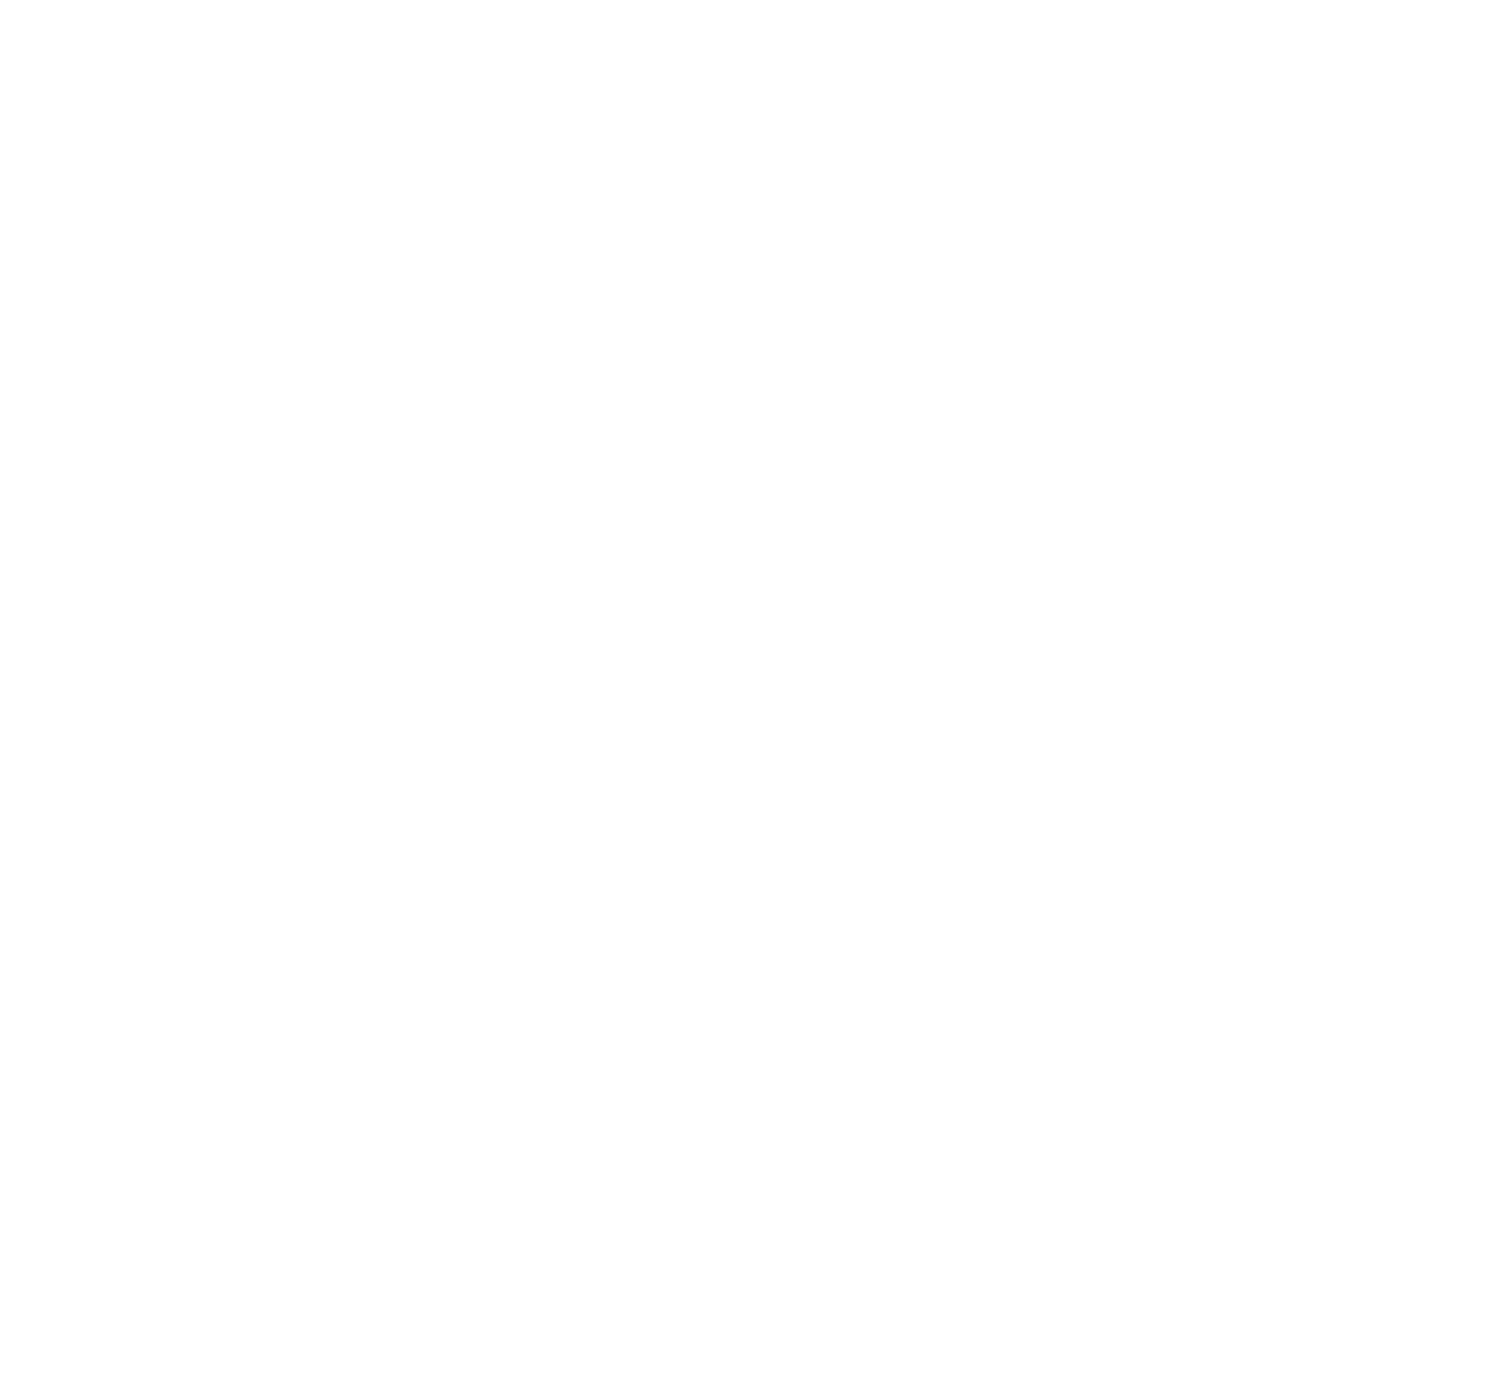 IMMA Collective